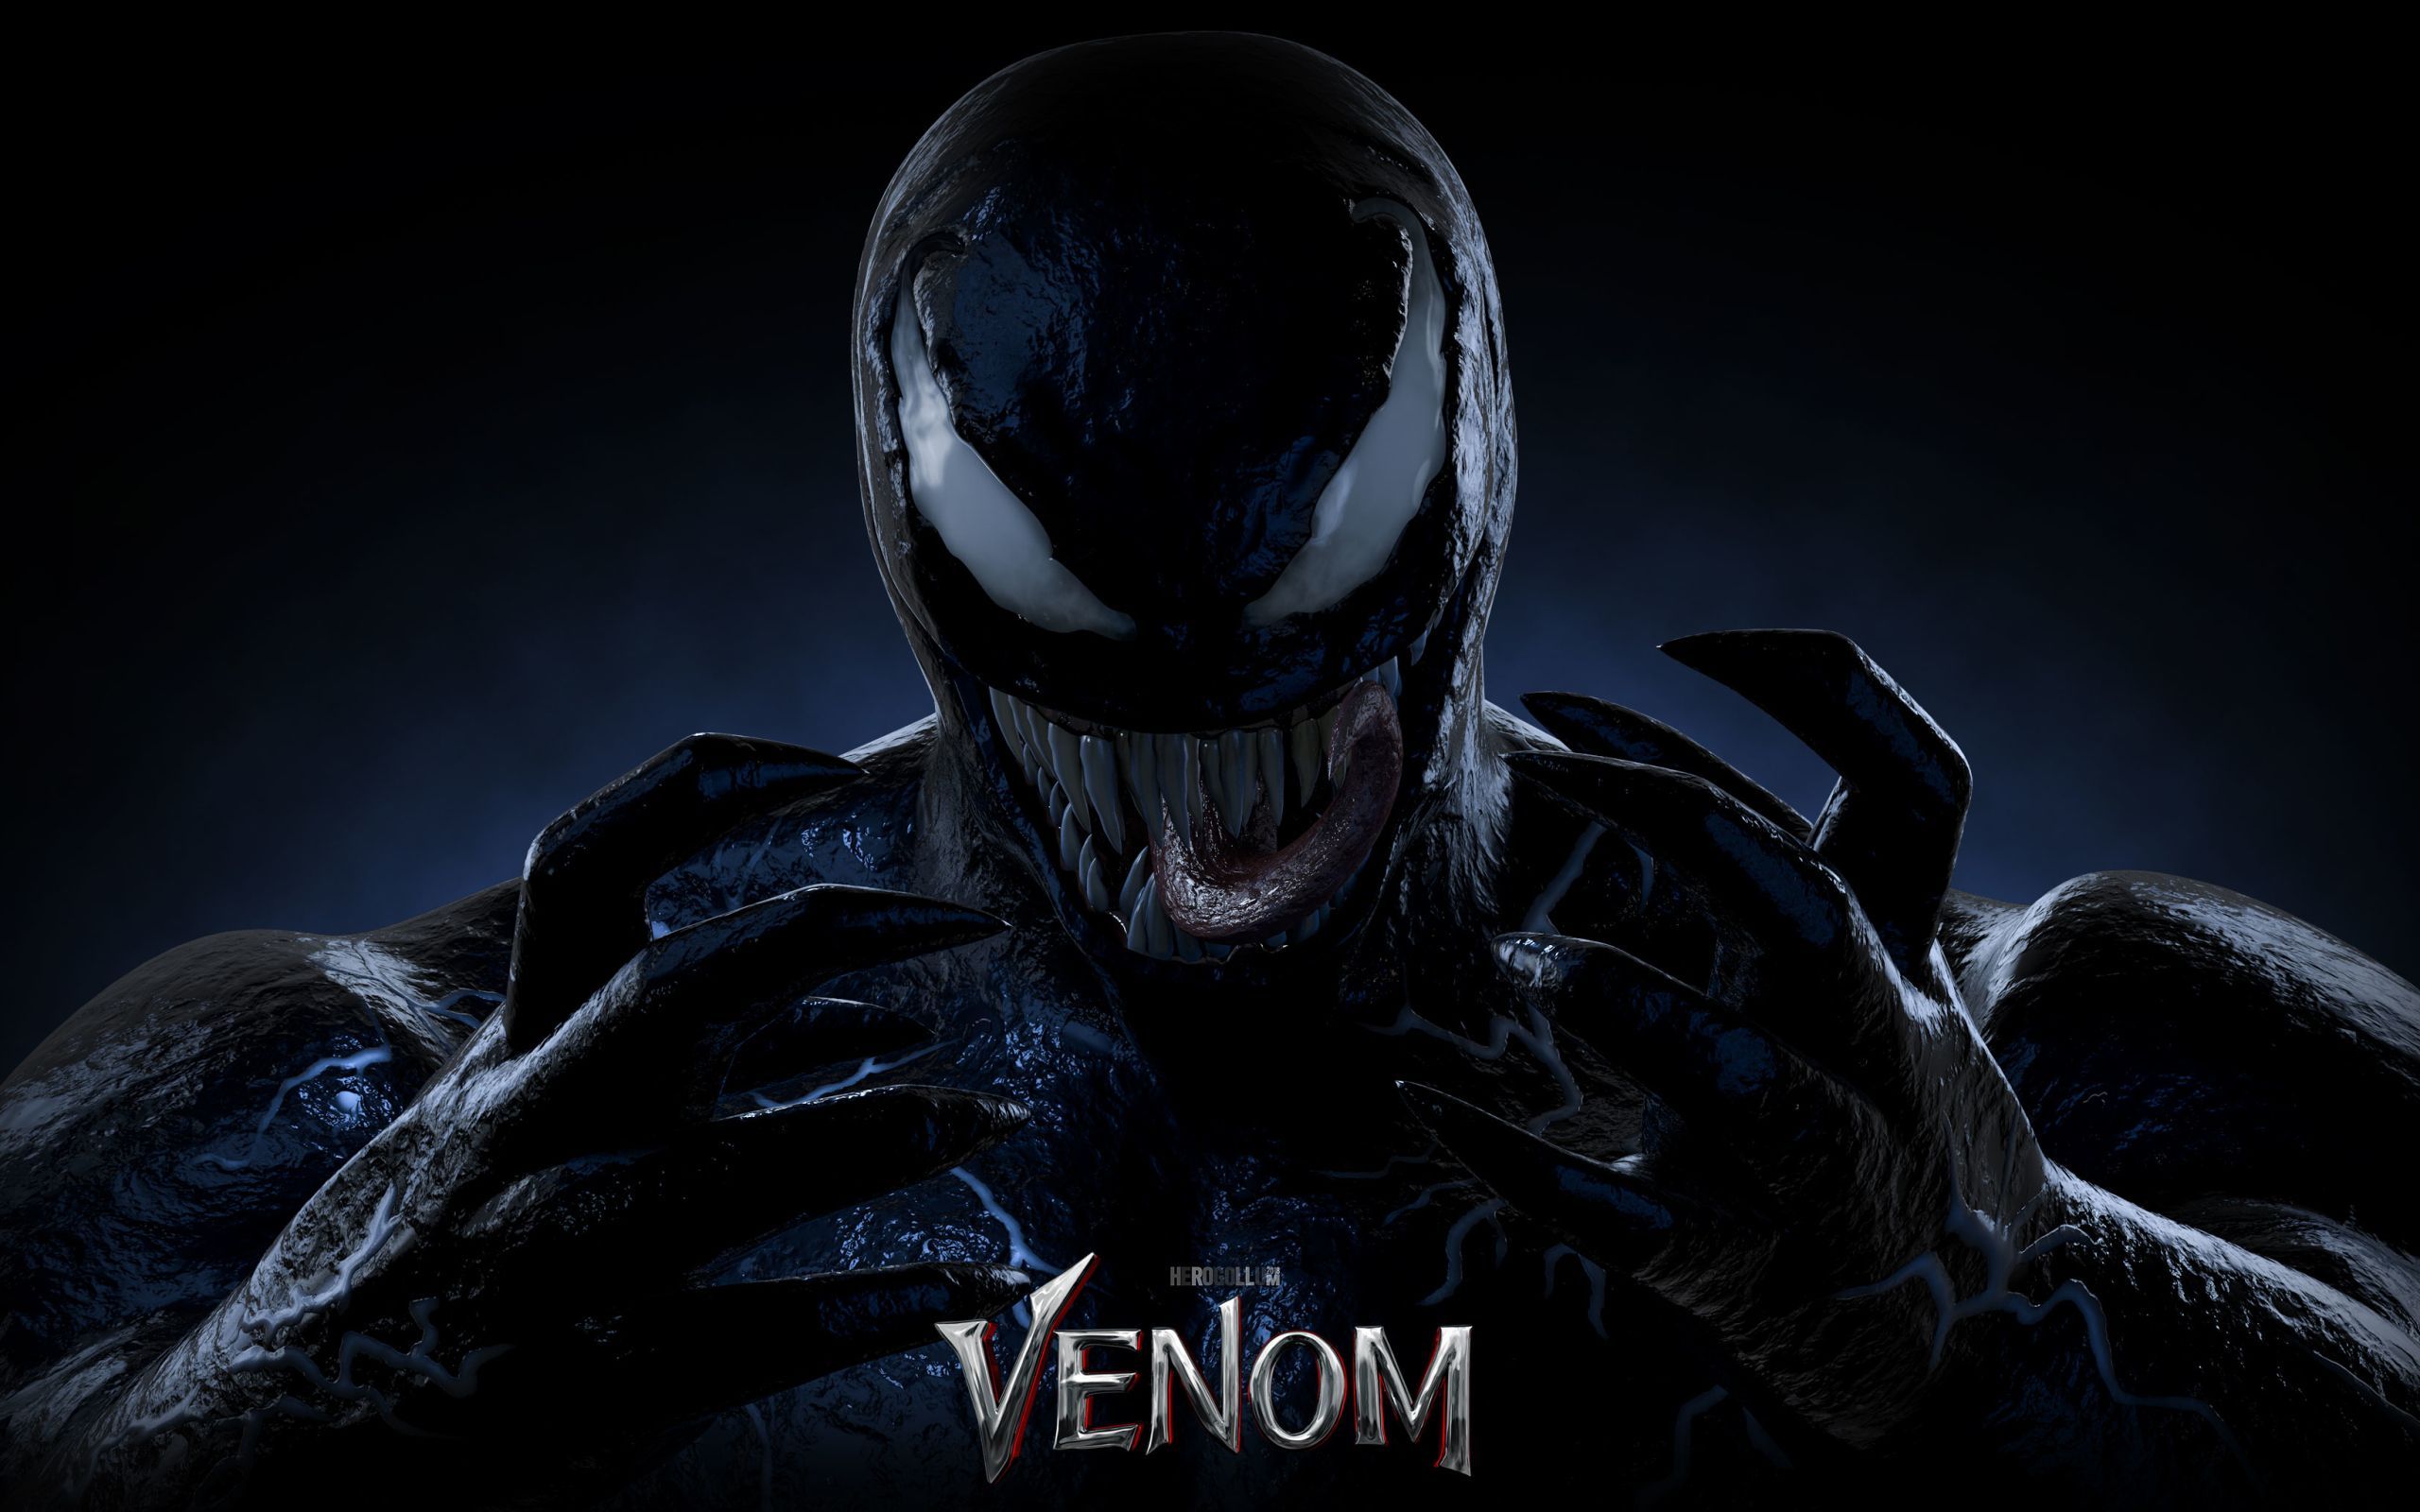 Fondos de pantalla de Venom Movie - Los mejores fondos de película de Venom gratis